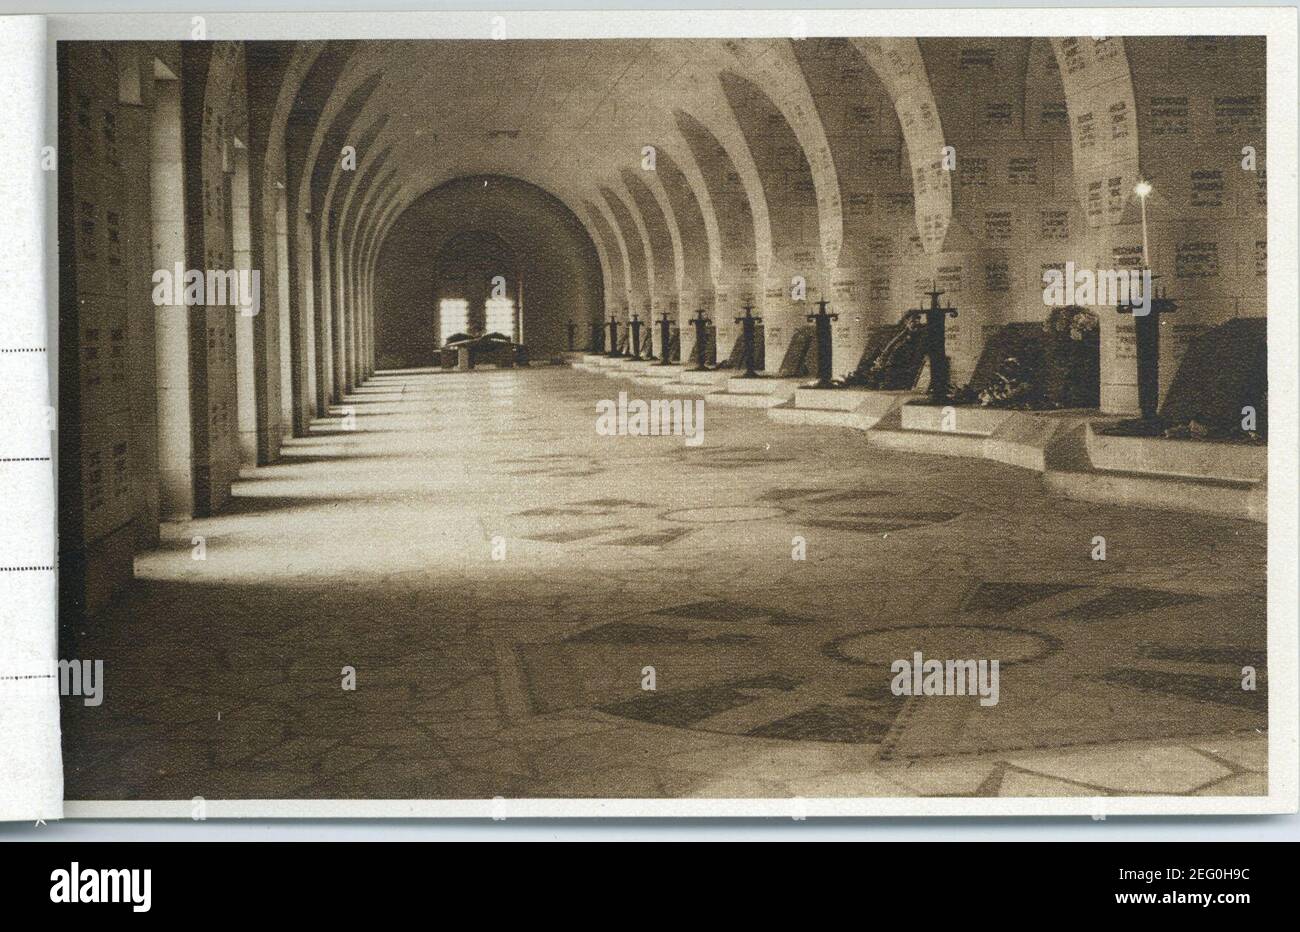 Ossuaire de Douaumont, Verdun 1914-1918 P-FG-CP-01050-6. Stock Photo